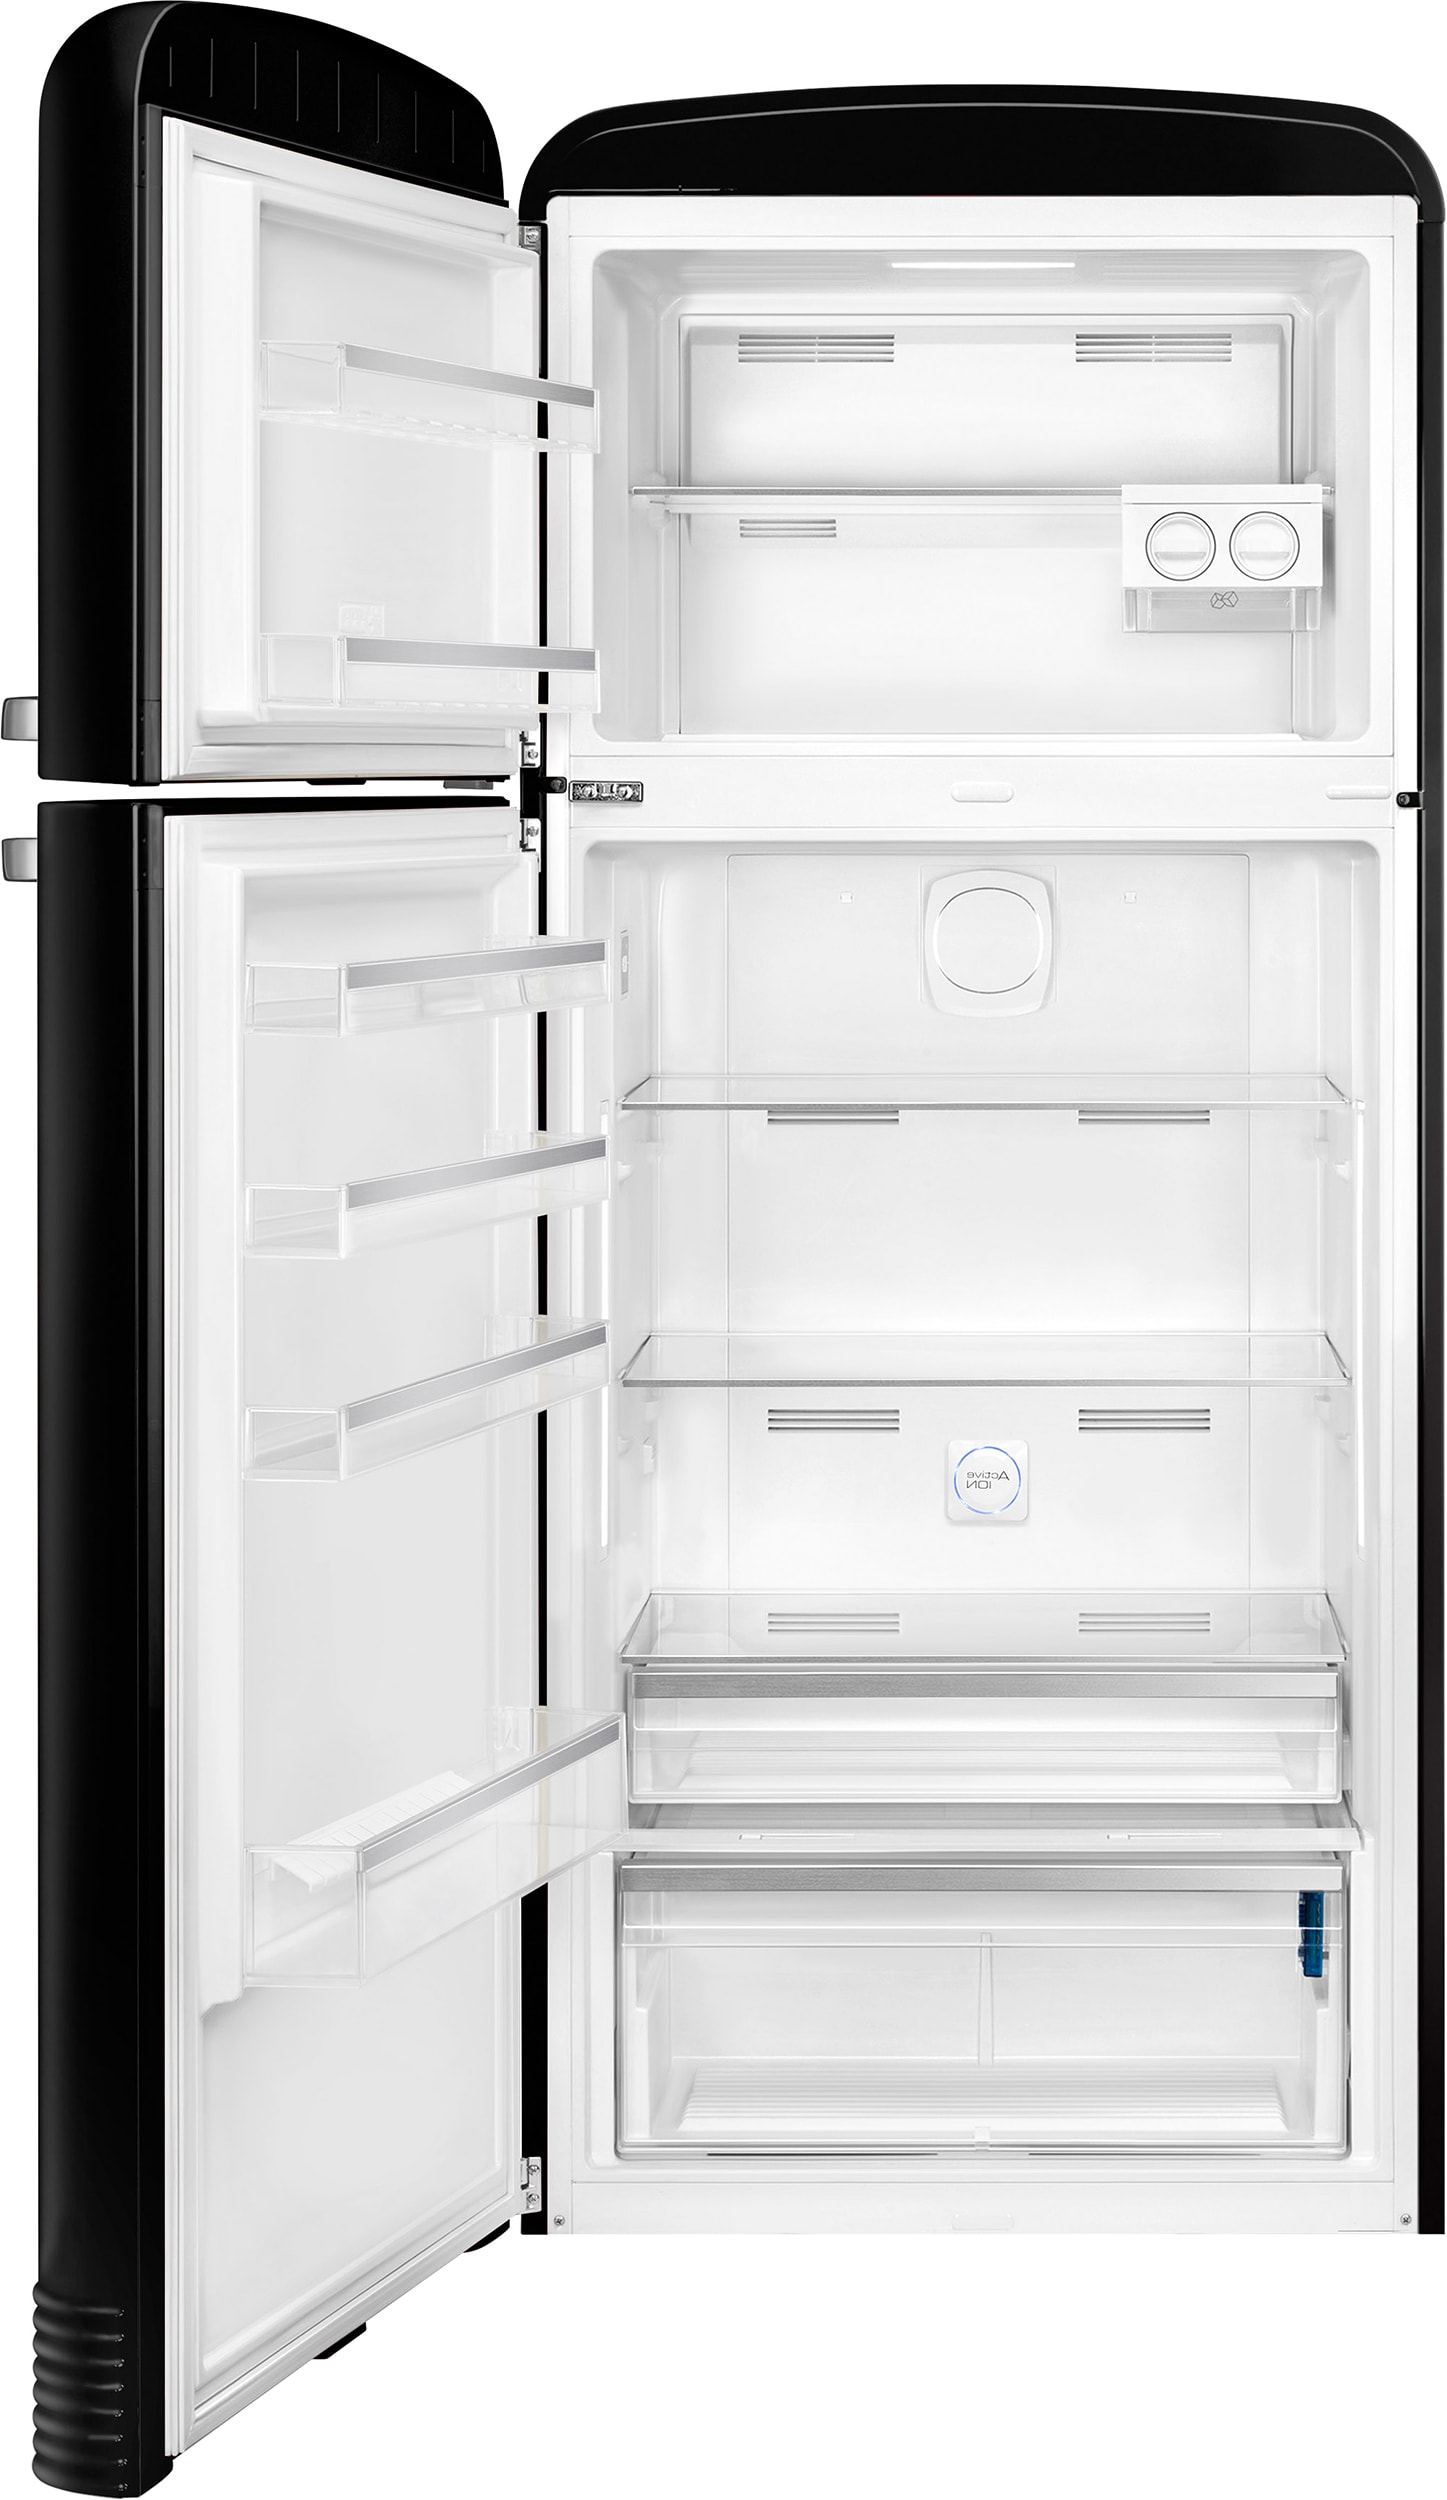 FAB32LBL5 SMEG Réfrigérateur combiné pas cher ✔️ Garantie 5 ans OFFERTE